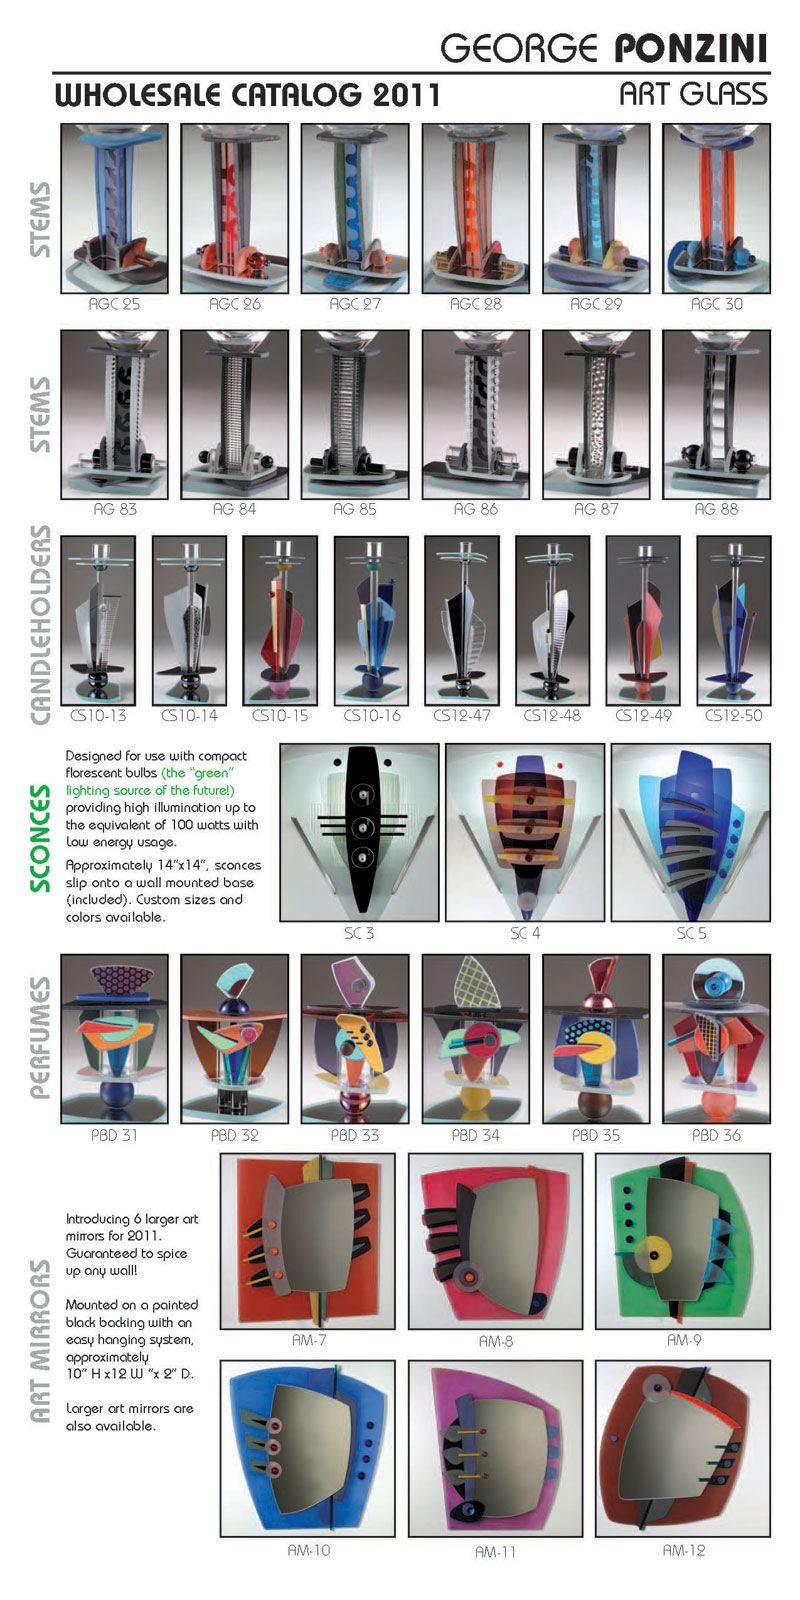 Ponzini Art Glass Catalog 2011 pg 1